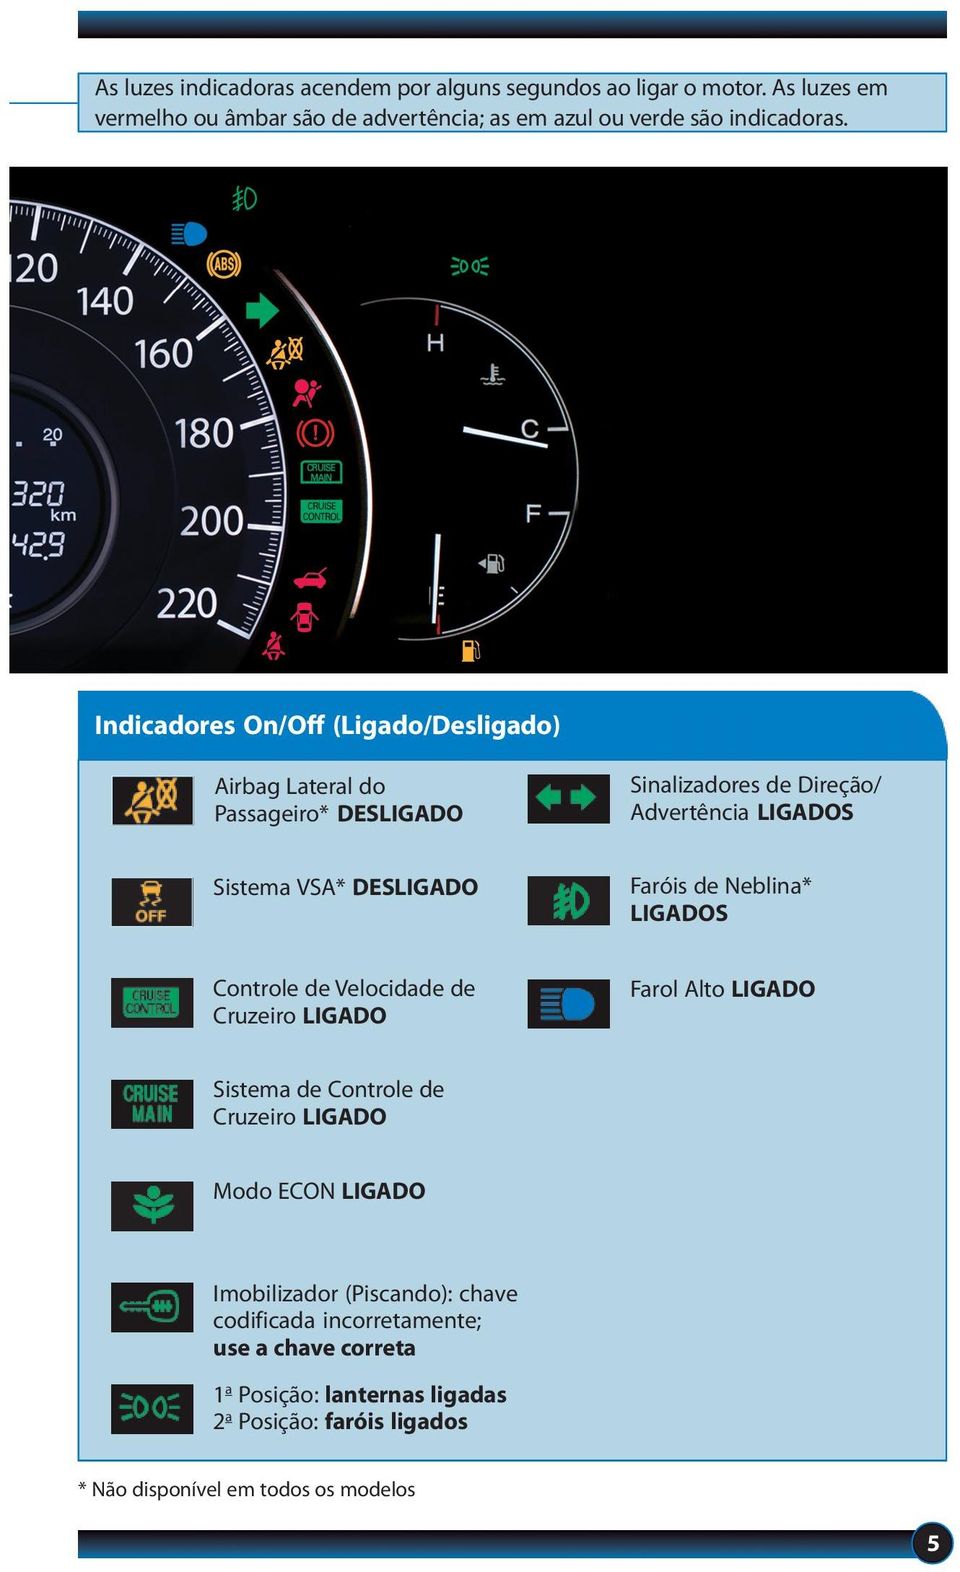 de Neblina* LIGADOS Controle de Velocidade de Cruzeiro LIGADO Farol Alto LIGADO Sistema de Controle de Cruzeiro LIGADO Modo ECON LIGADO Imobilizador